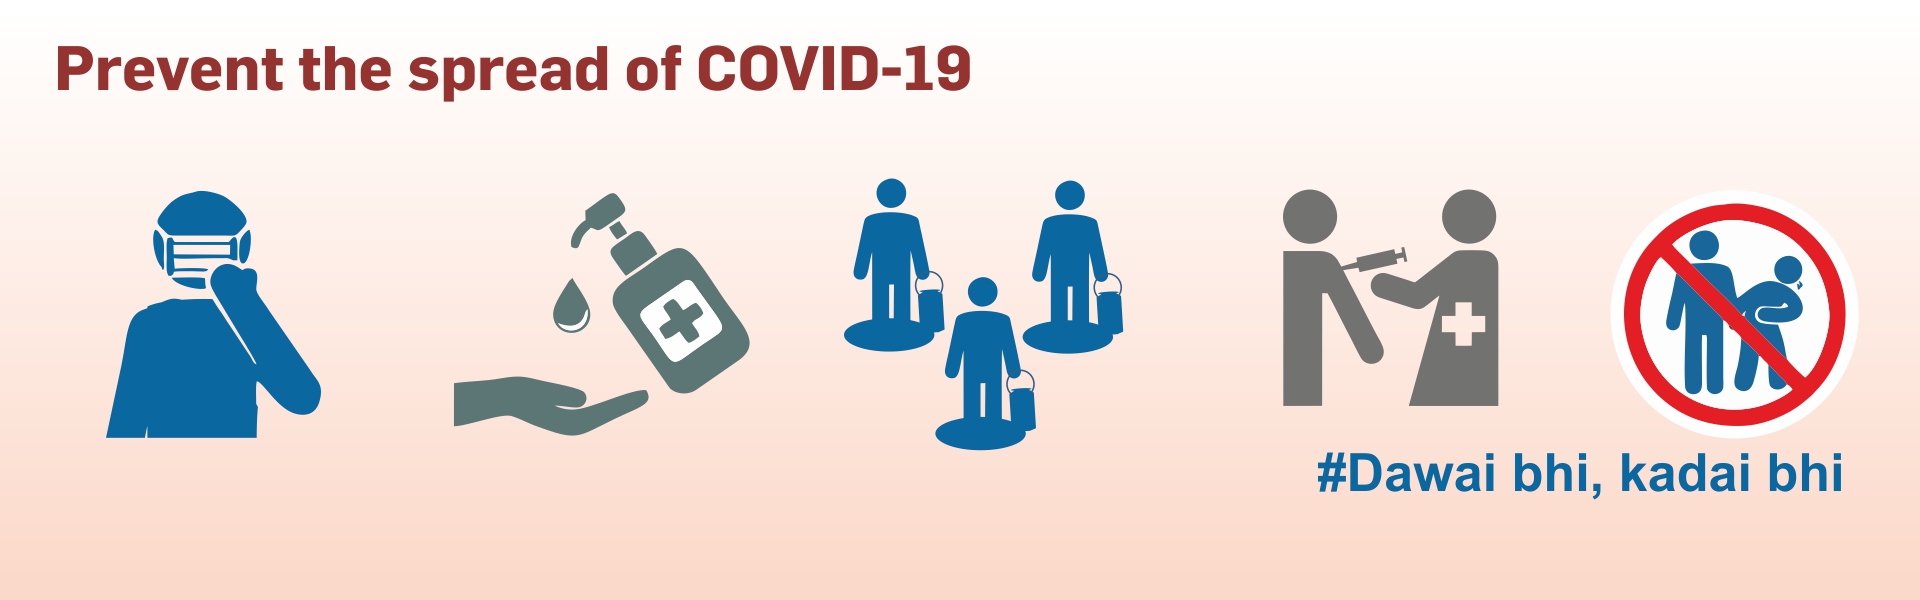 Prevent the spread of Covid-19